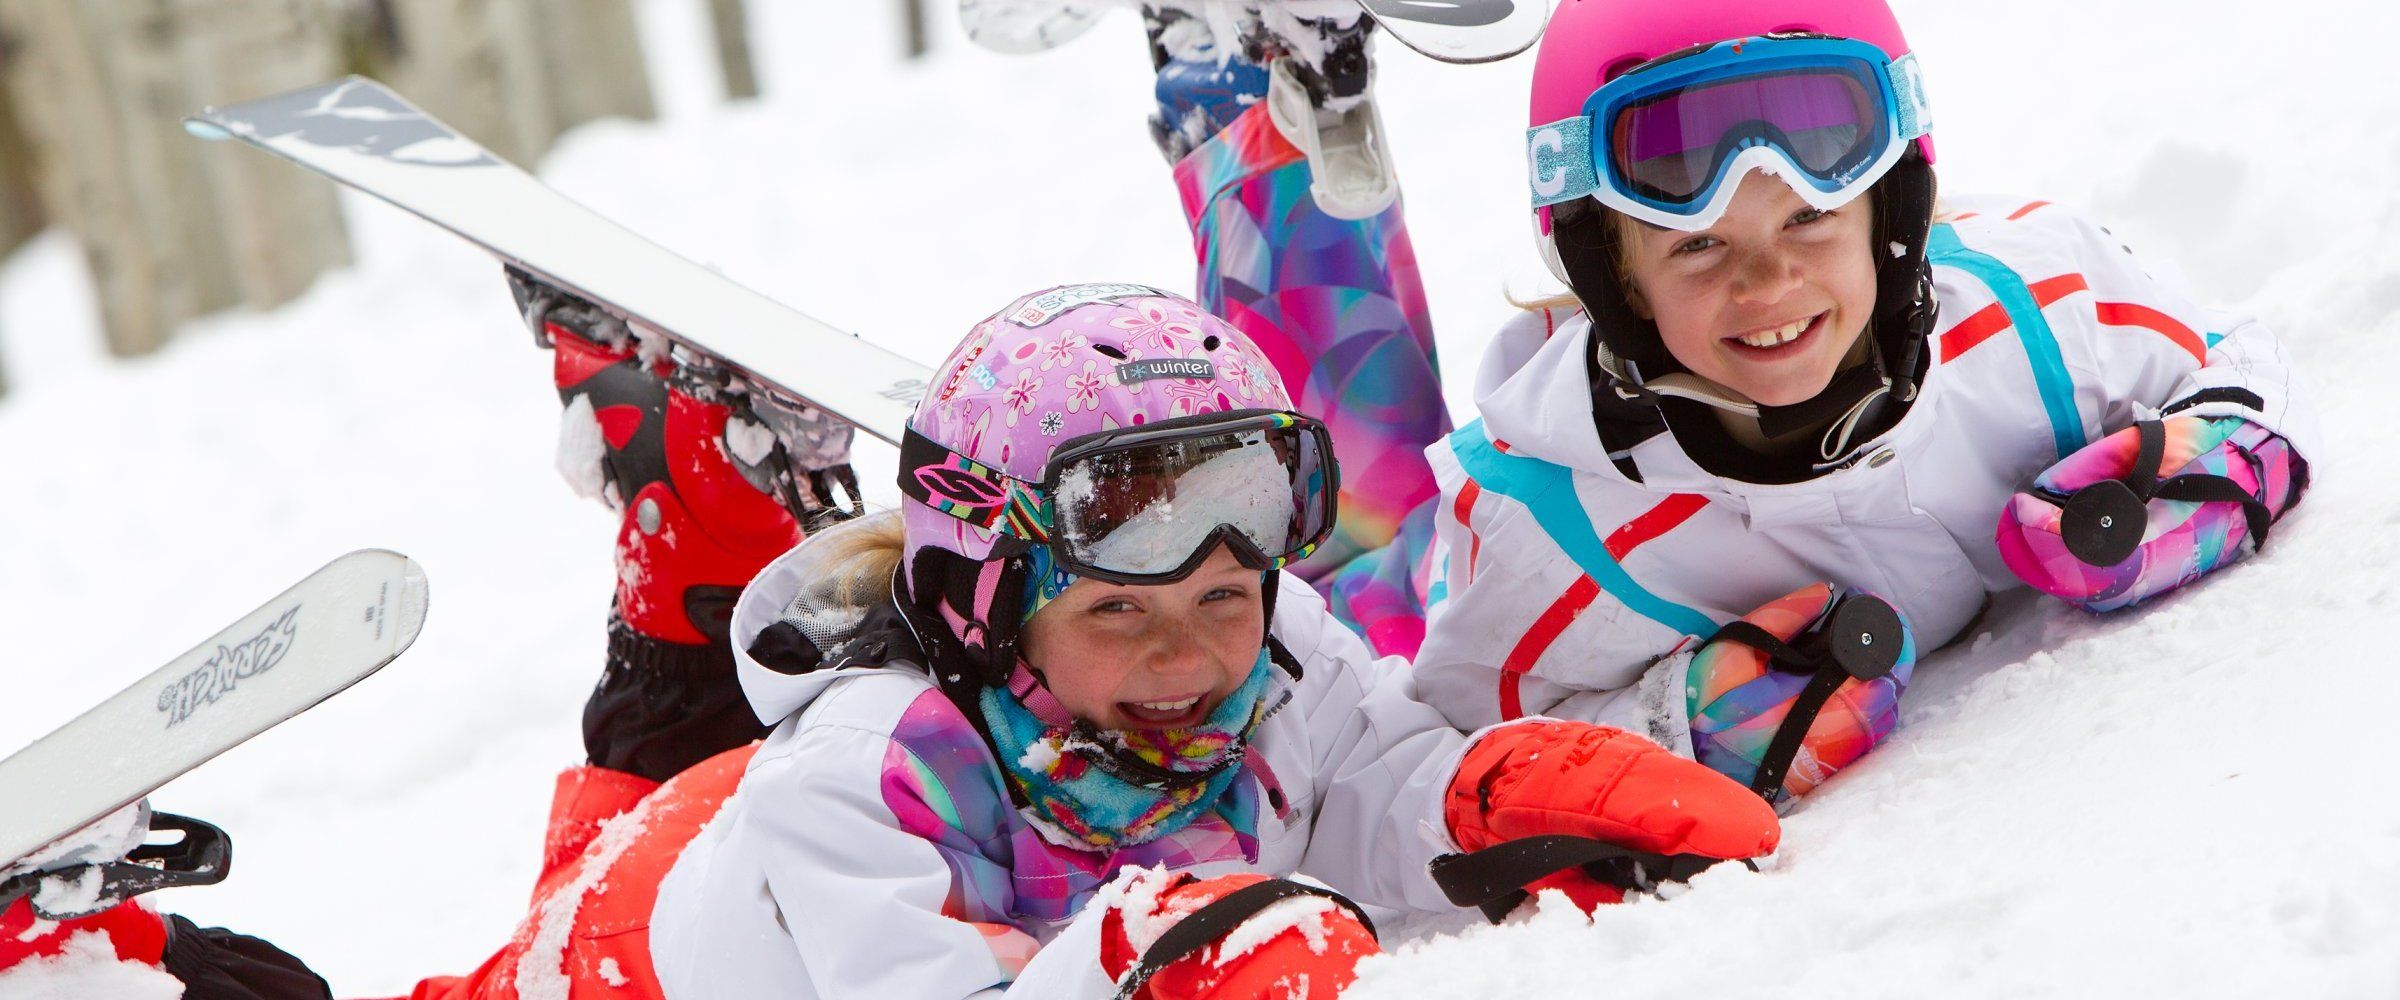 Тысячи новосибирцев встанут на лыжи, сноуборды и коньки в День снега